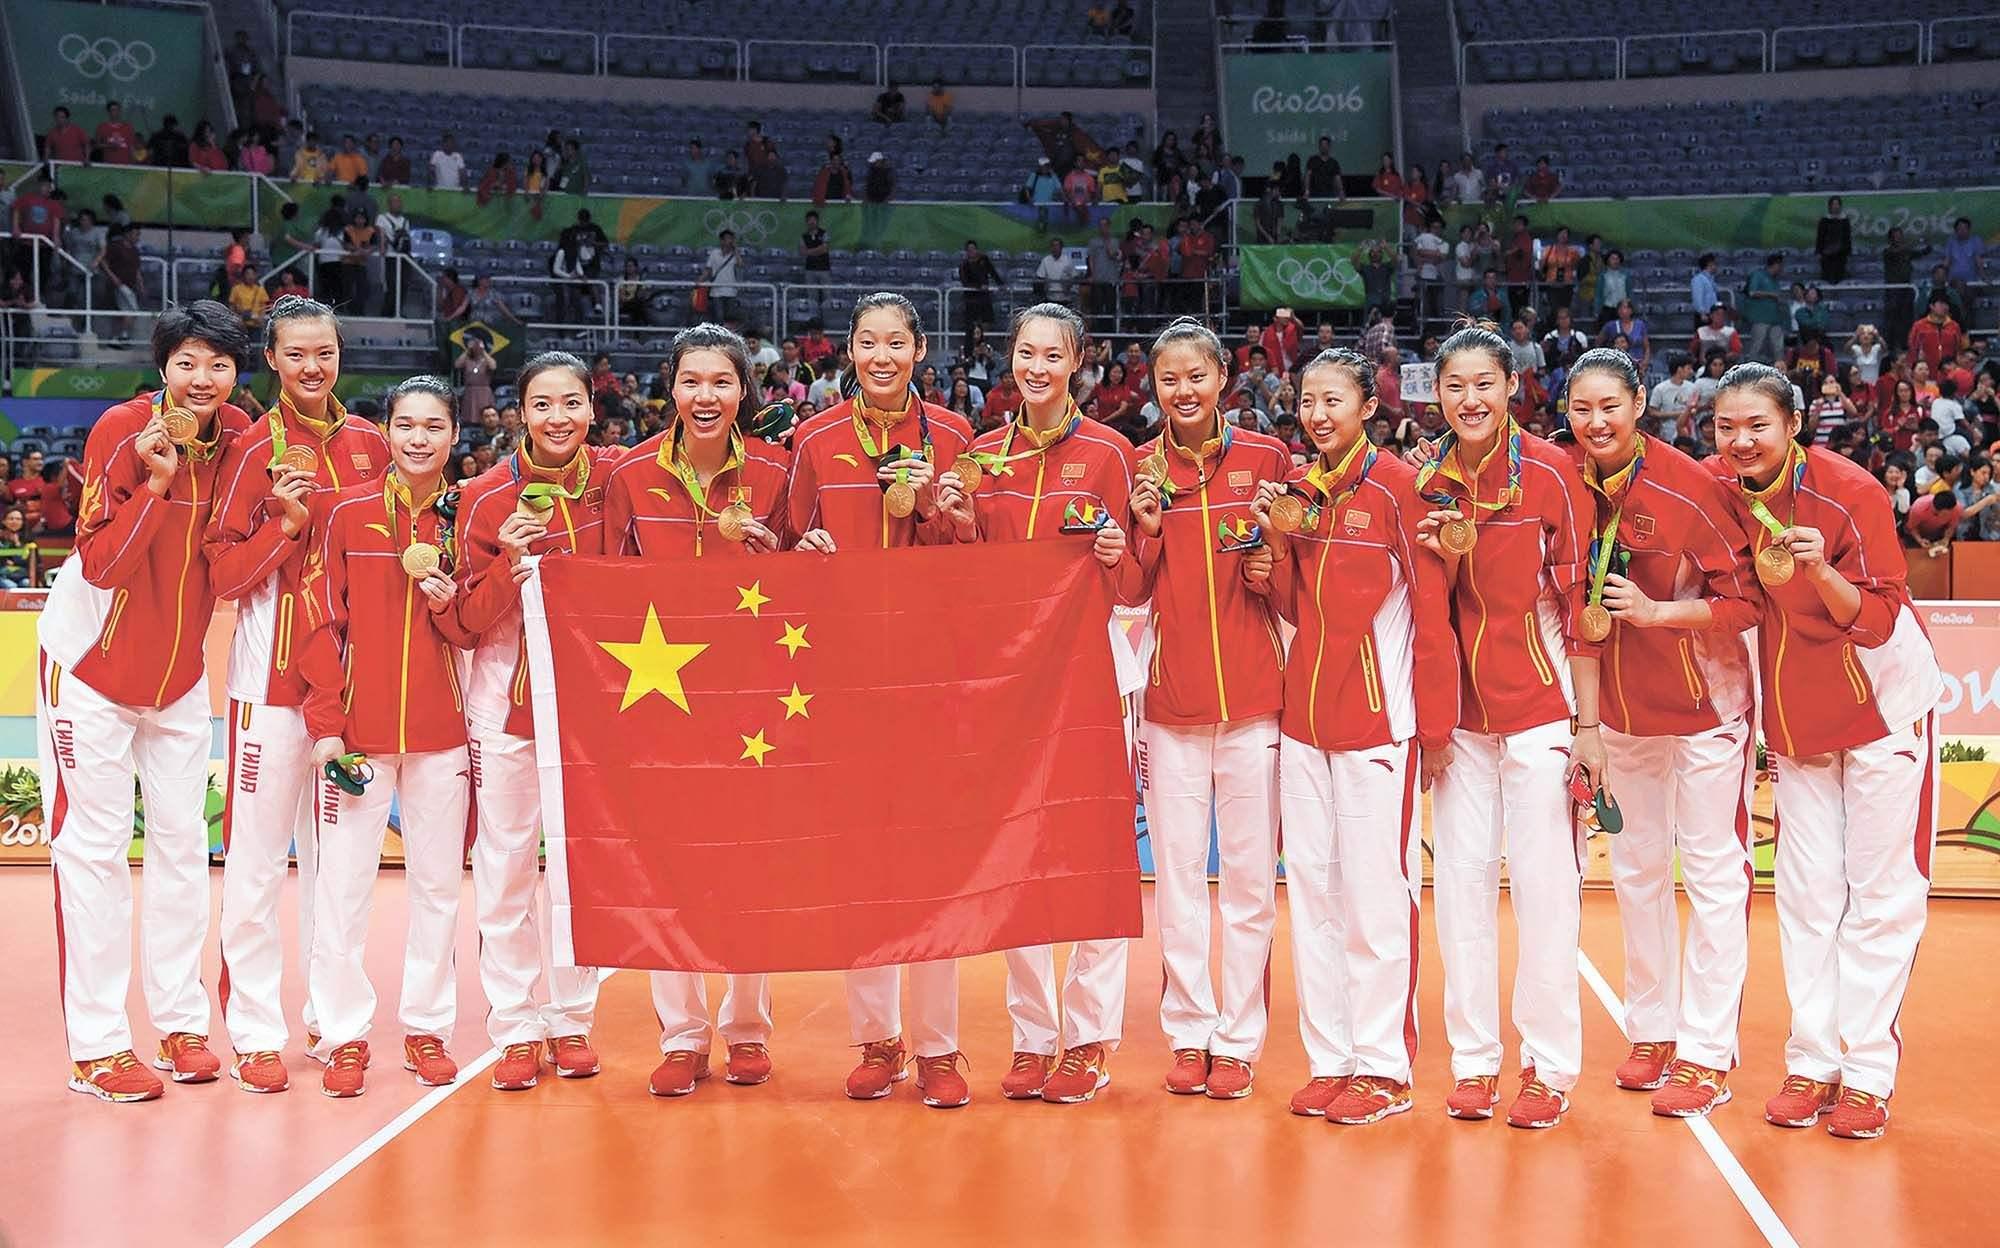 2018女排世锦赛最终分组 硬签出成绩 相信中国